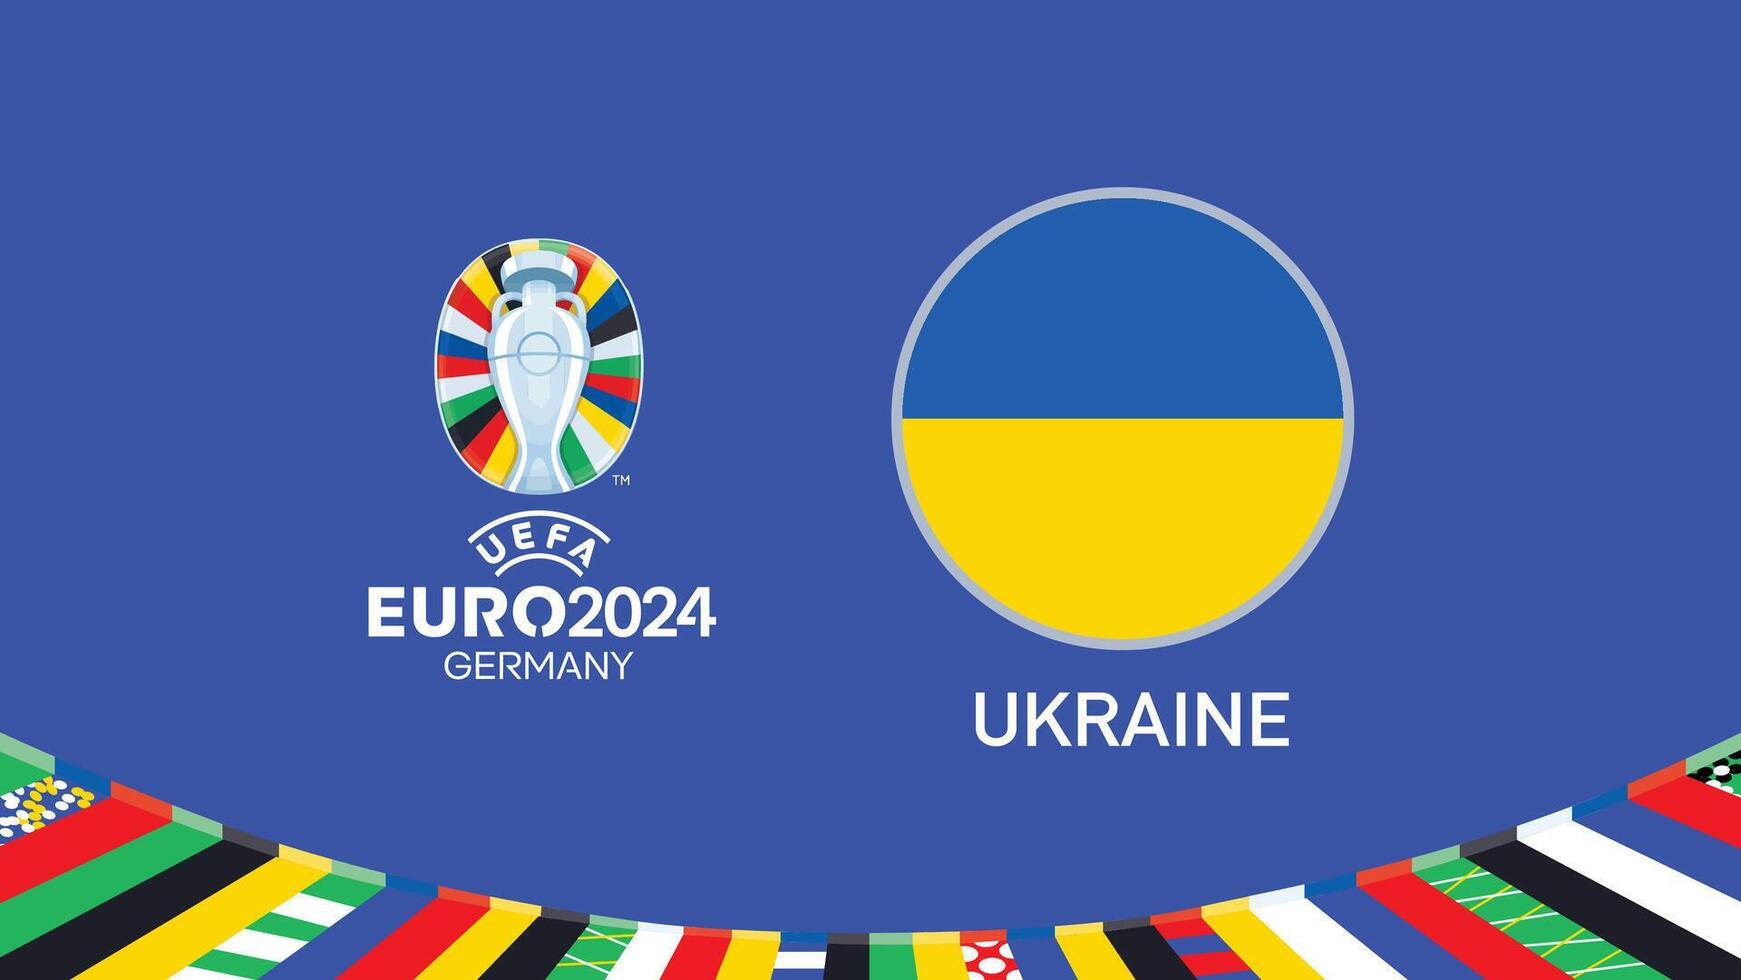 Euro 2024 Deutschland Ukraine Flagge Emblem Teams Design mit offiziell Symbol Logo abstrakt Länder europäisch Fußball Illustration vektor